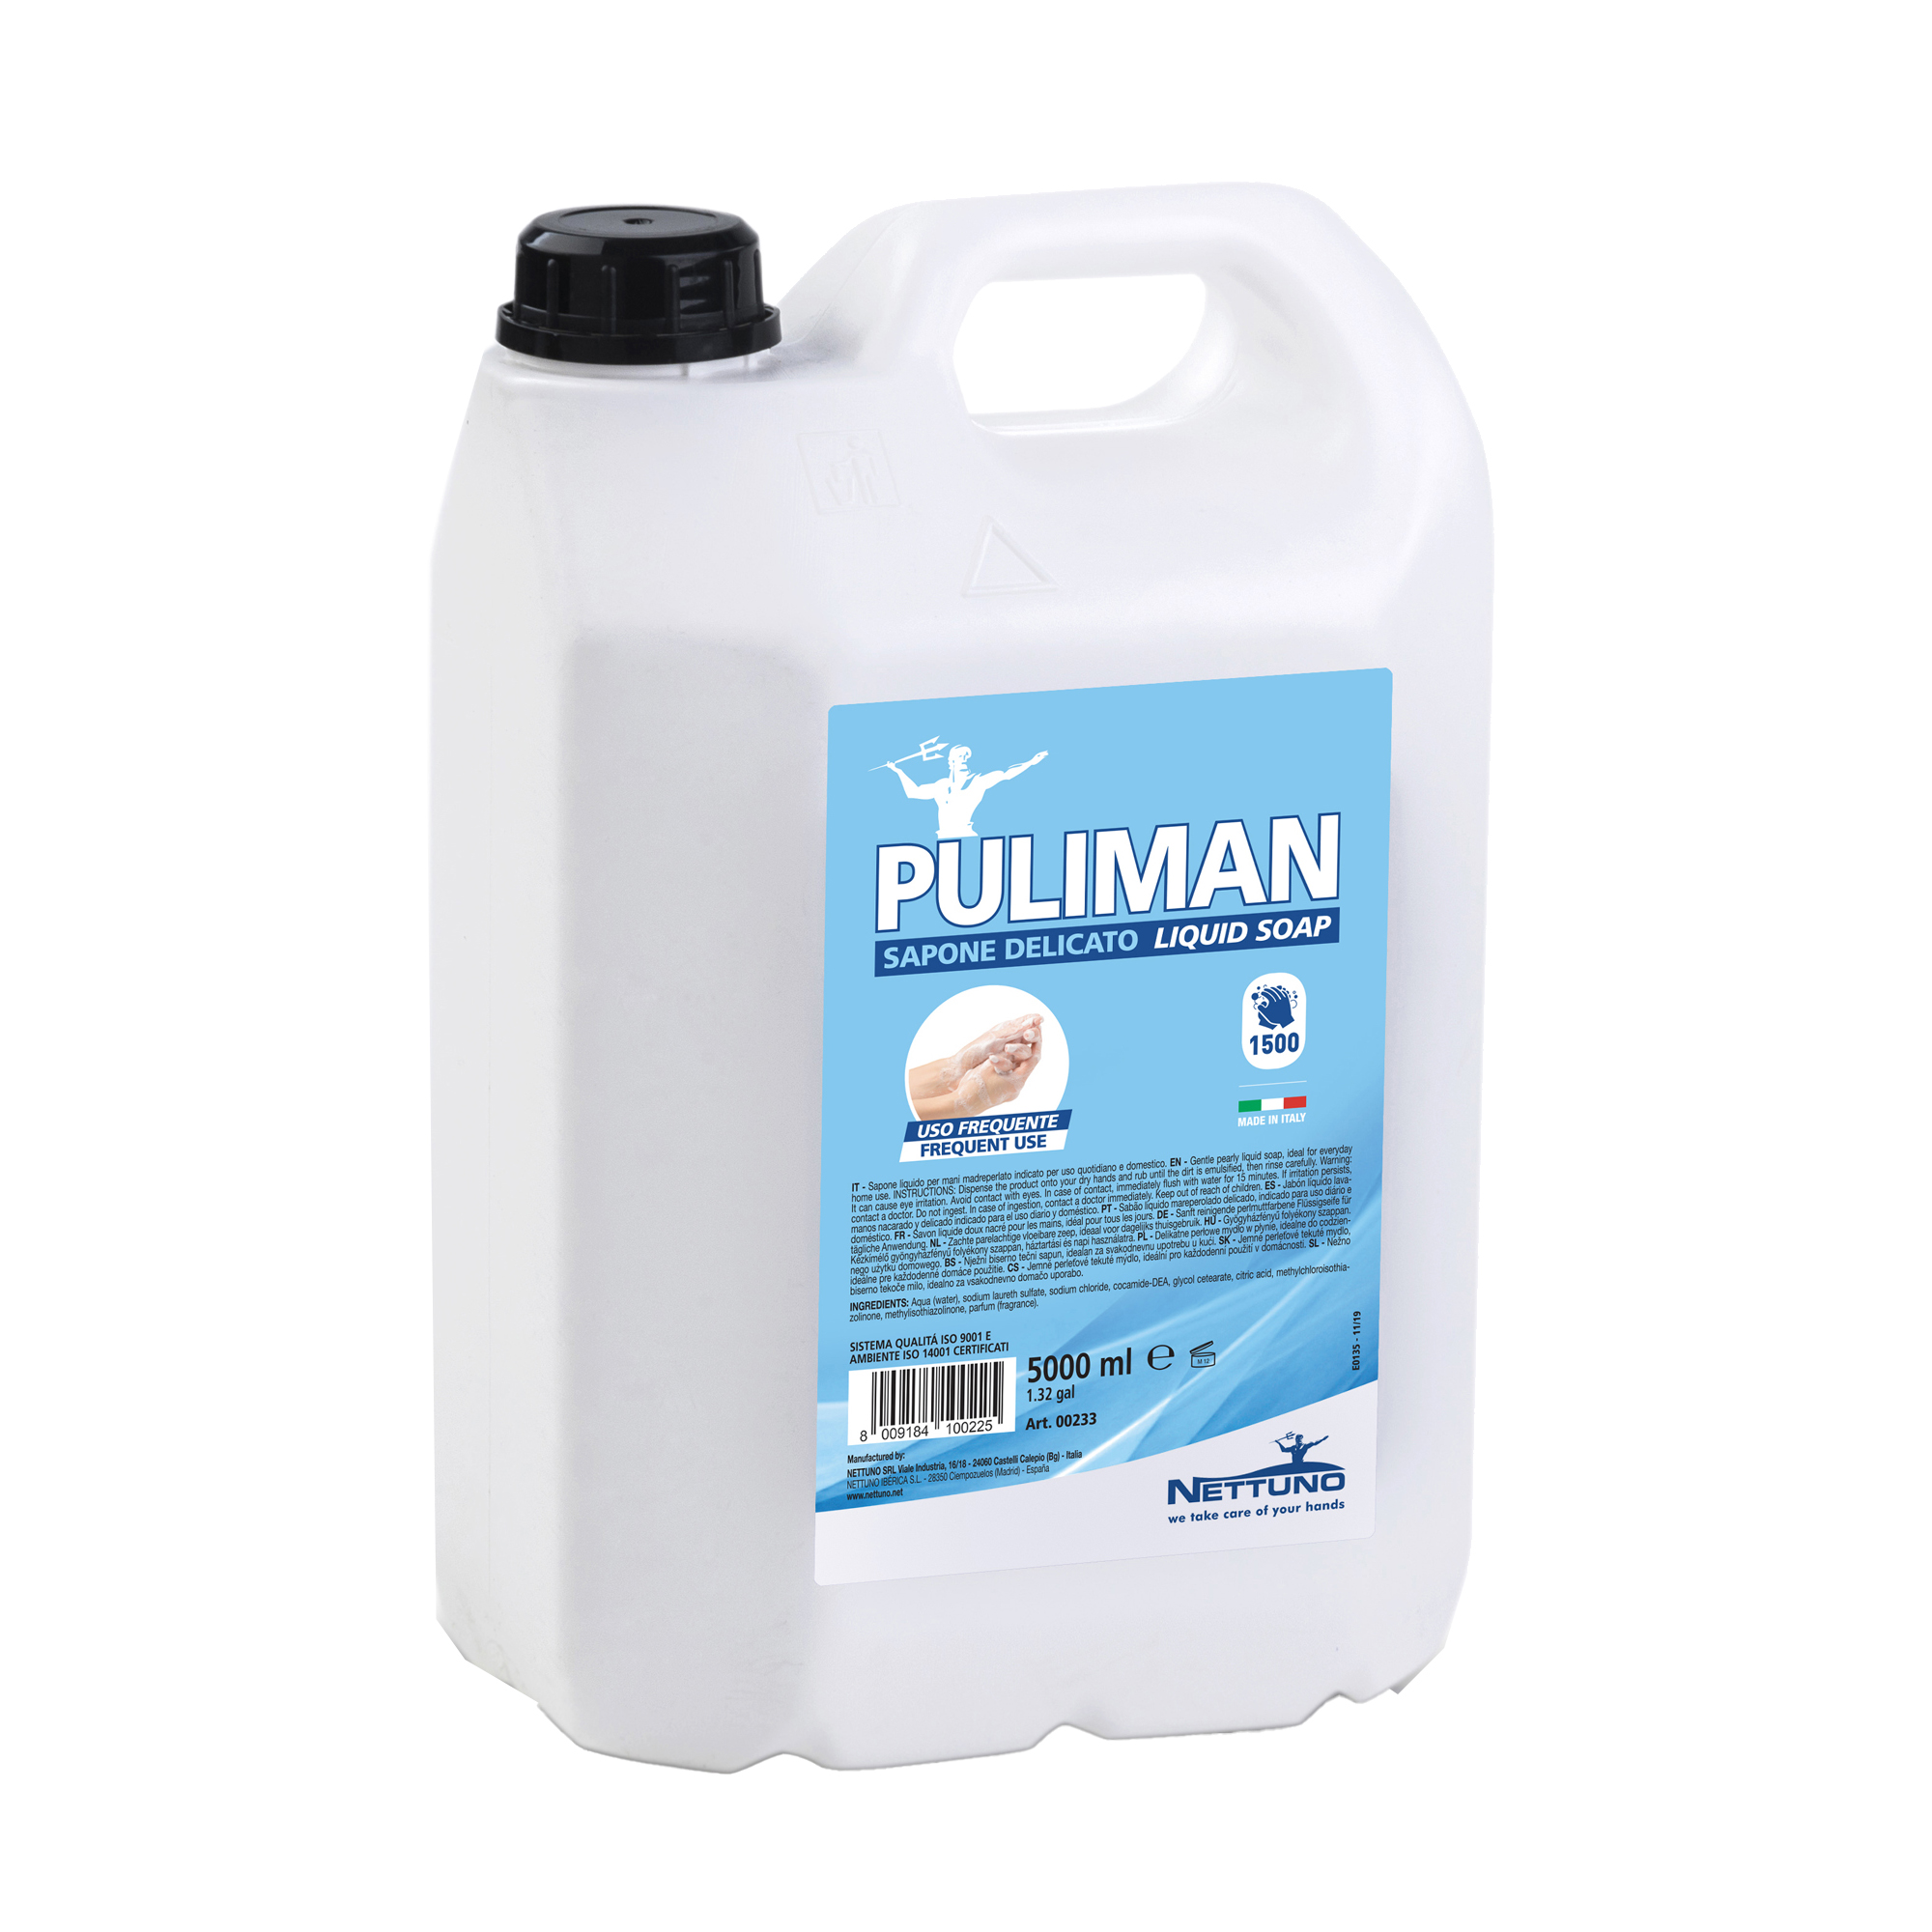 Sapone liquido Puliman - lavanda - Nettuno - tanica da 5 L